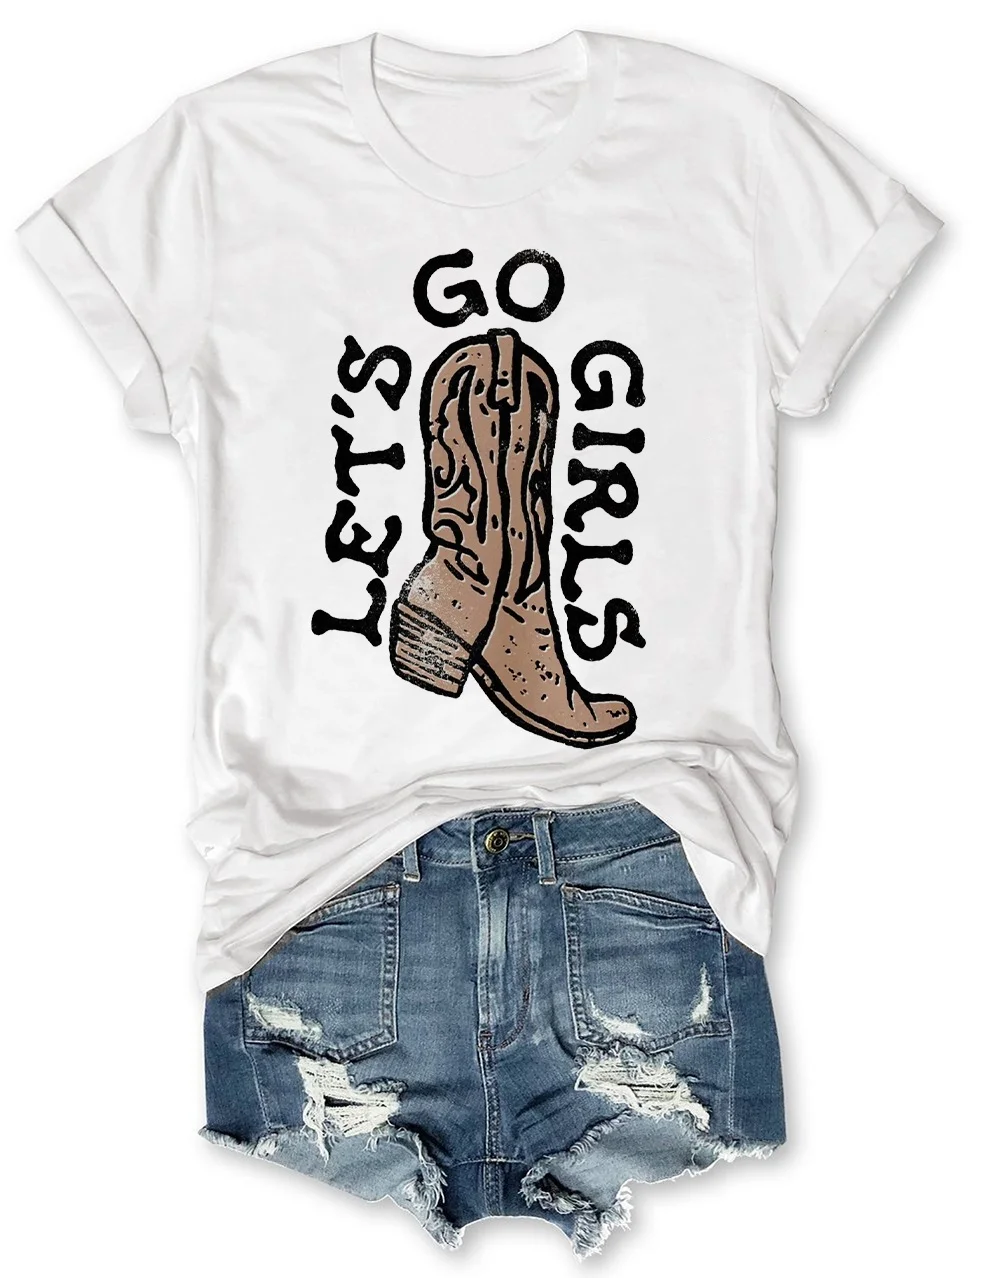 Lets Go Girls T-Shirt